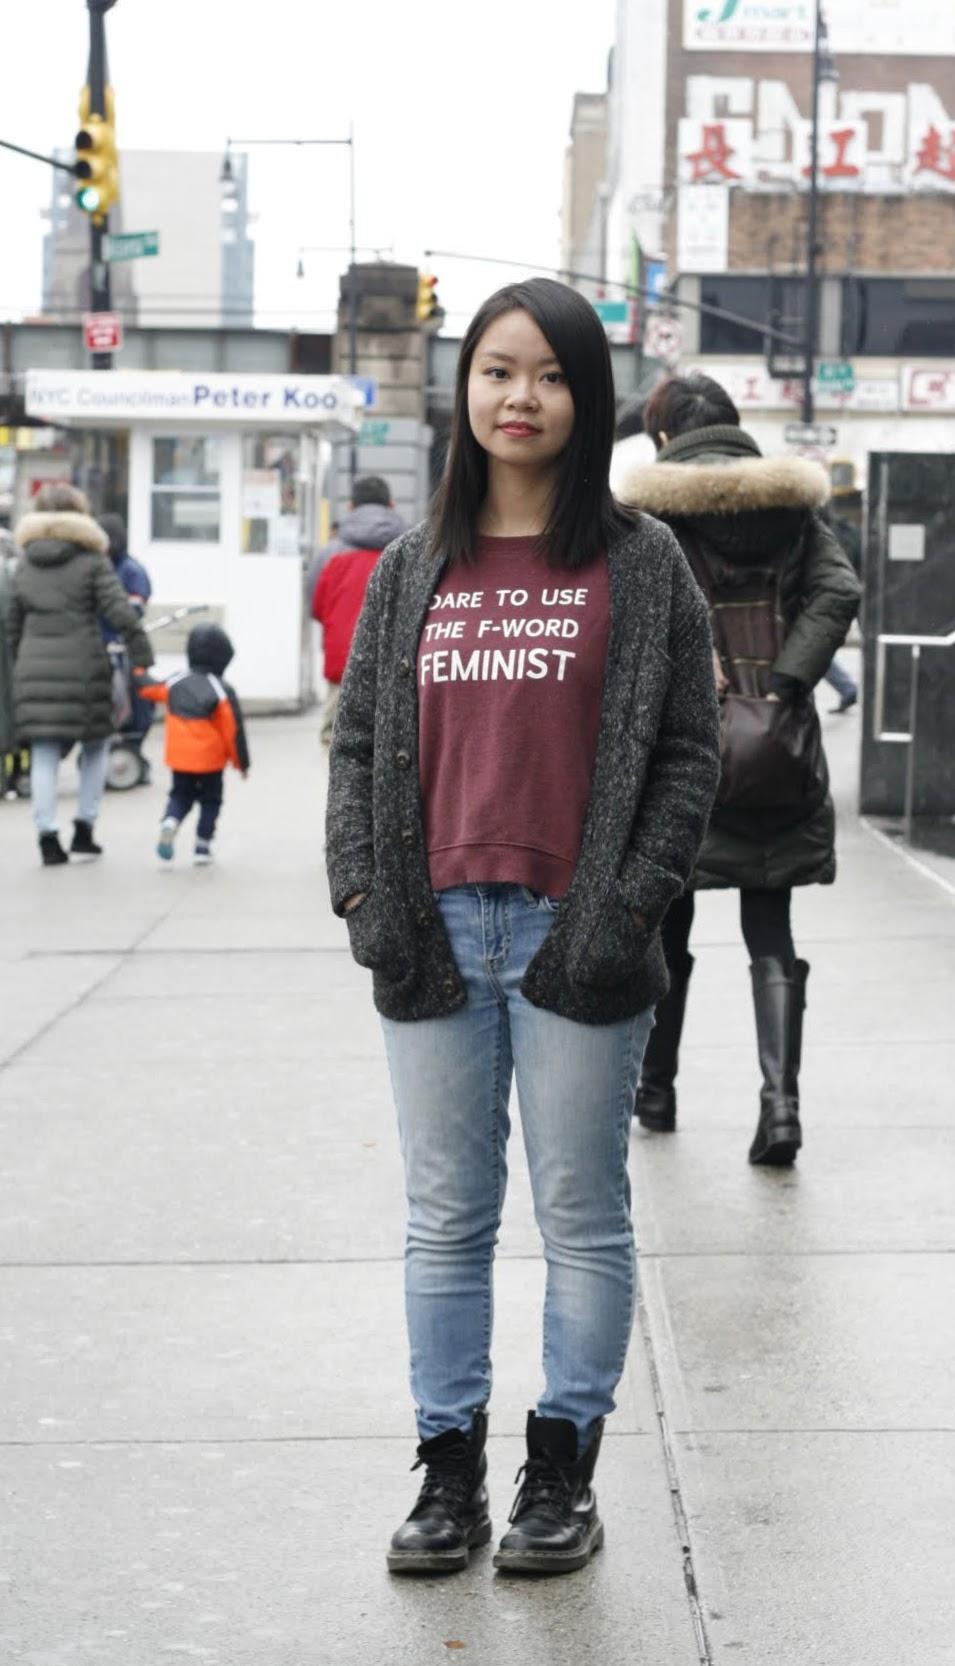 Chinese feminist